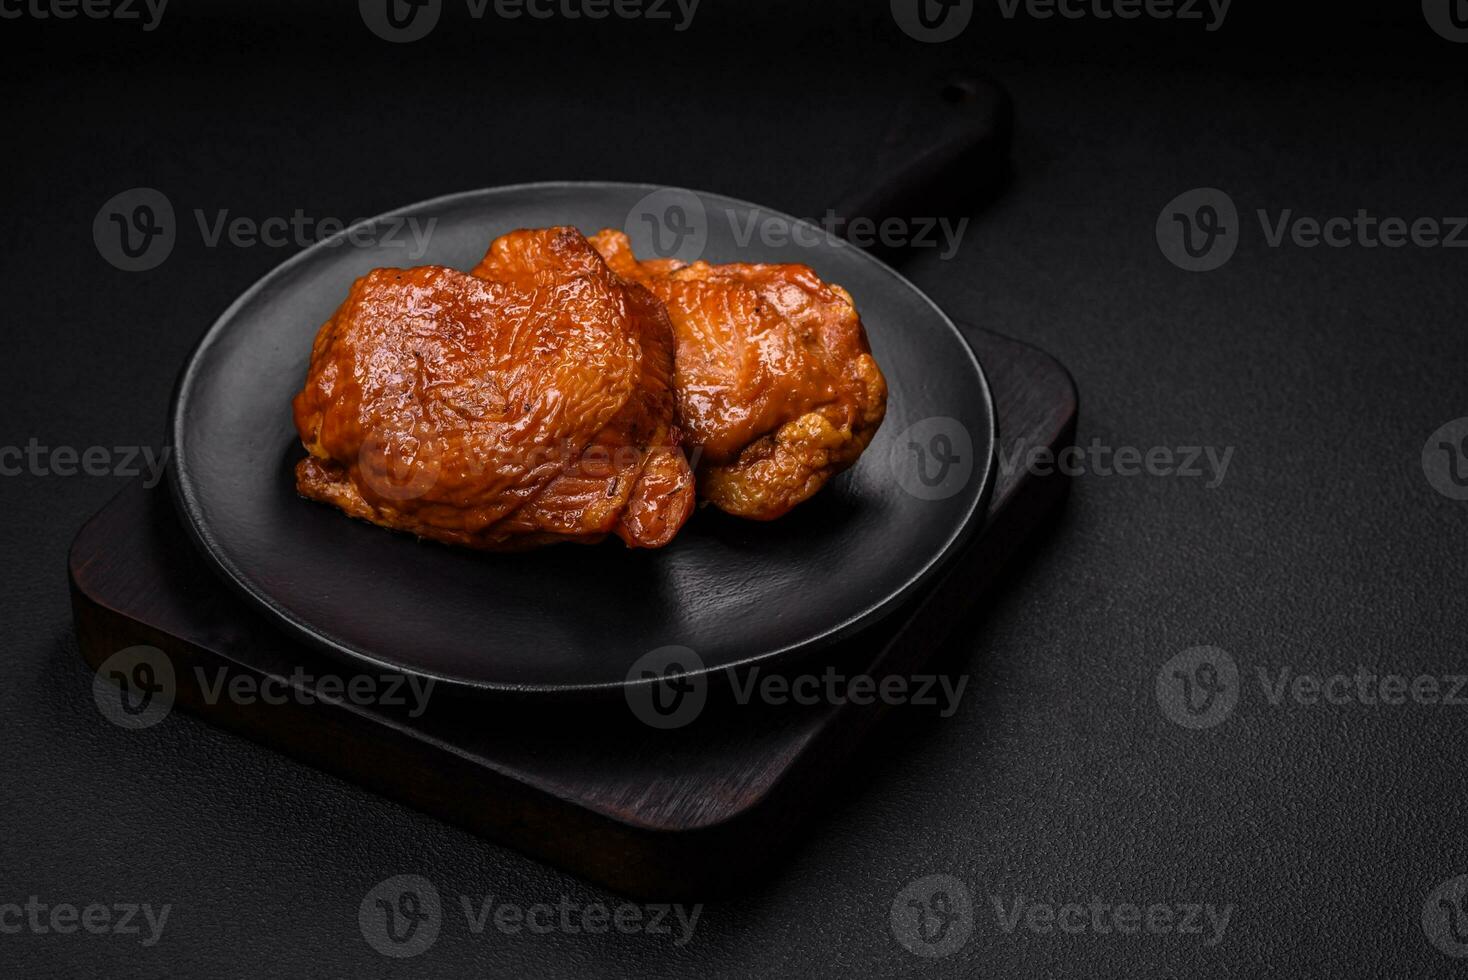 delizioso fritte o affumicato pollo cosce grigliato con spezie e erbe aromatiche foto